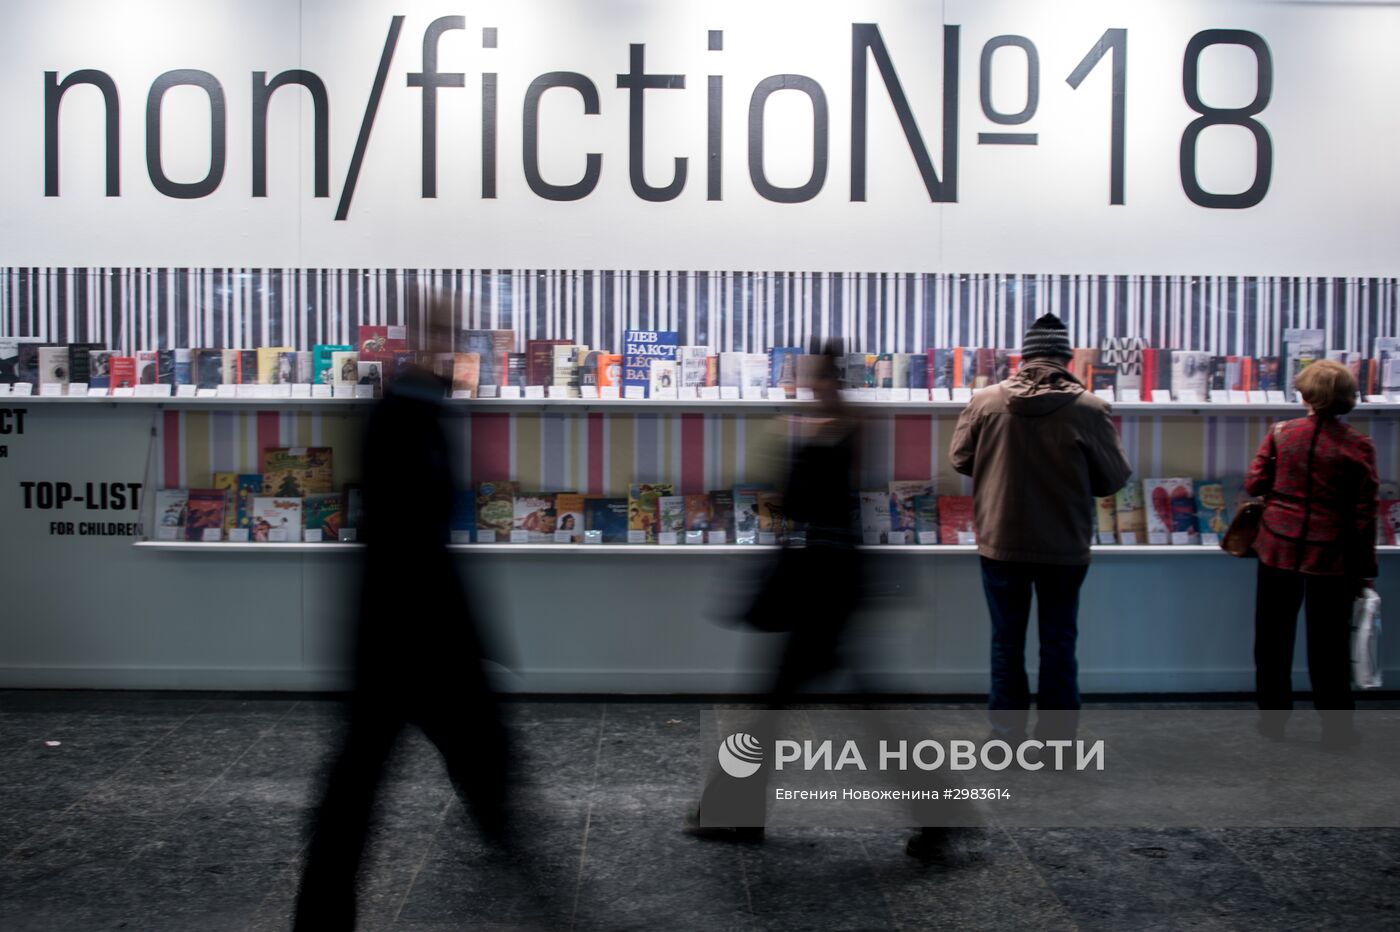 Международная ярмарка интеллектуальной литературы non/fictio№18